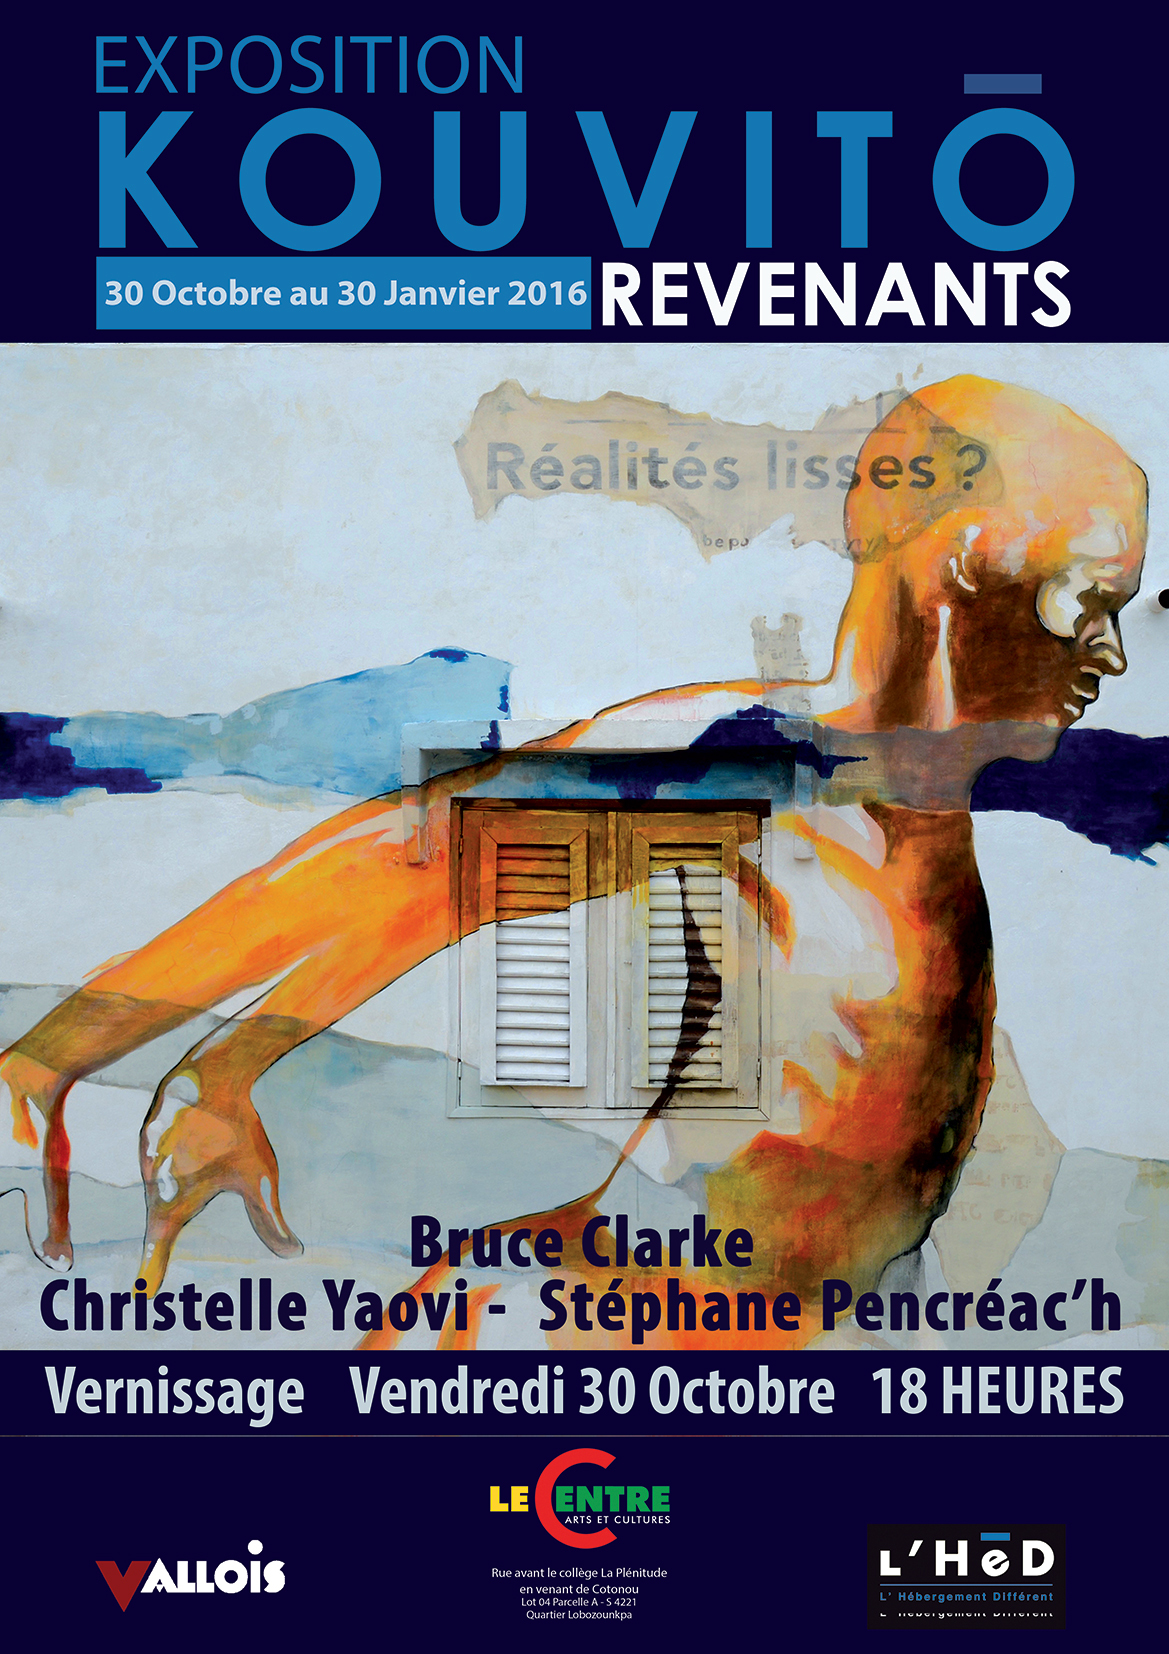 Christelle Yaovi, Bruce Clarke & Stéphane Pancréa'ch